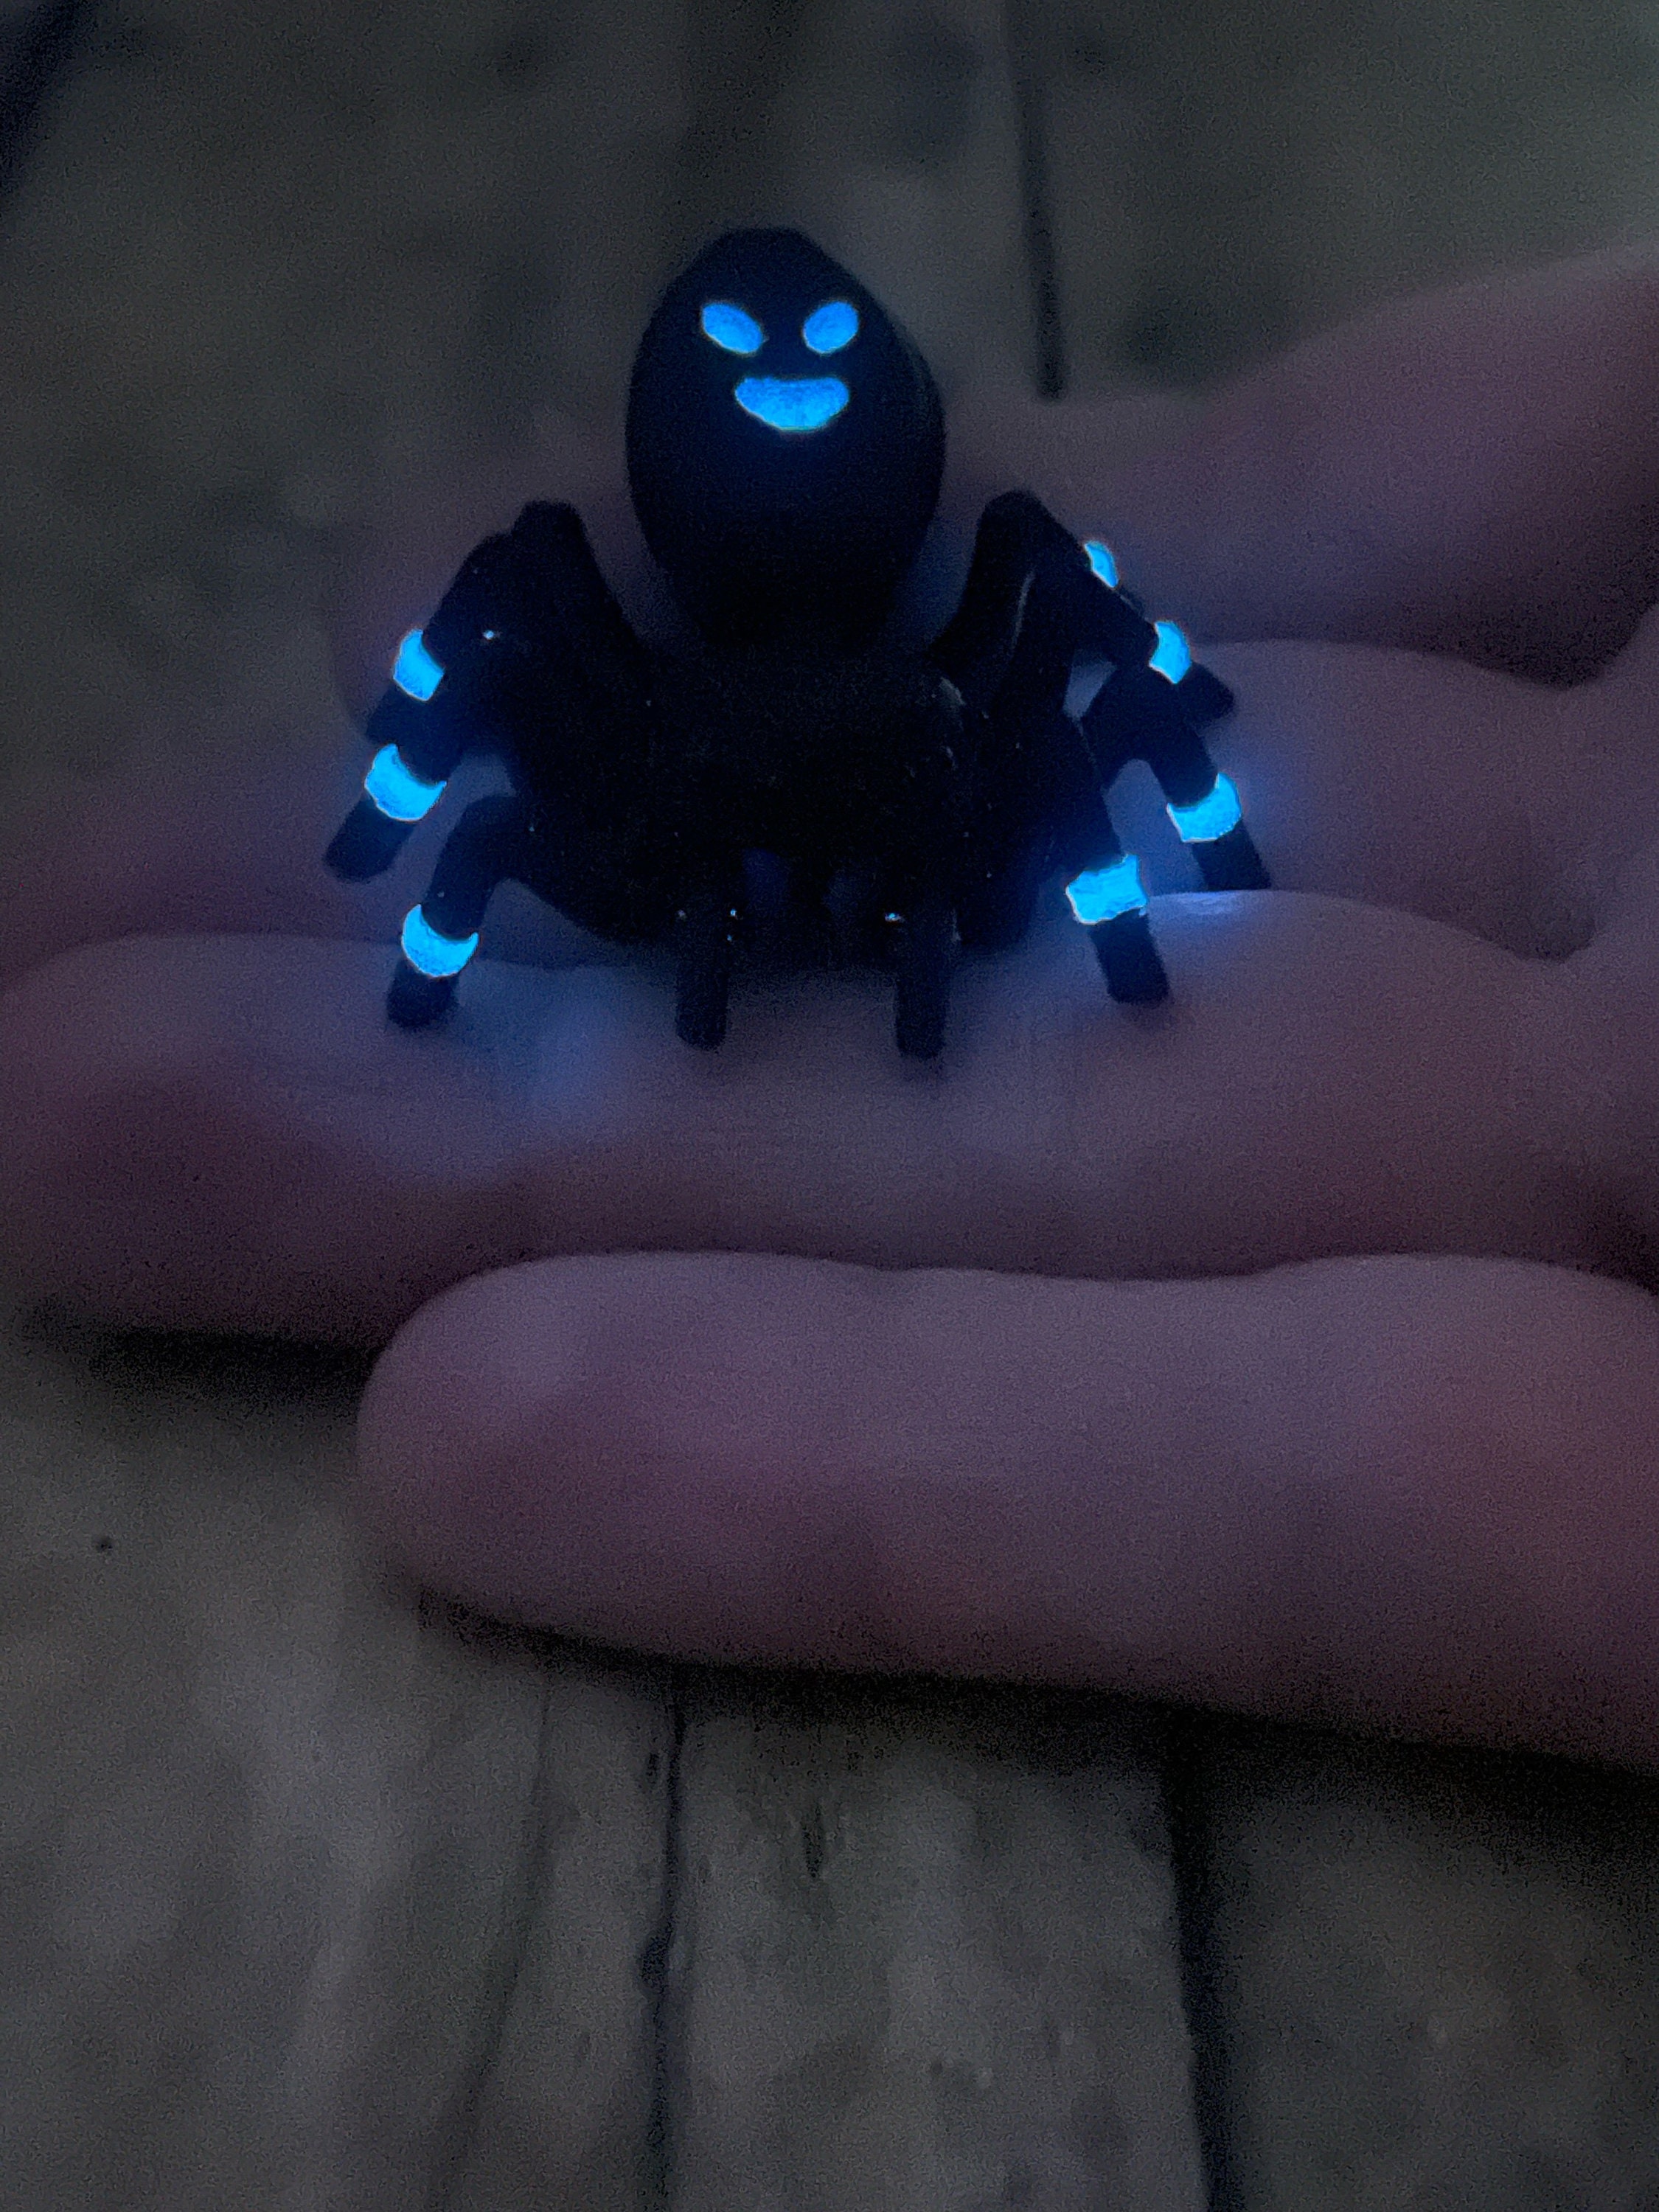 Accessoires pour imprimante 3D de l'araignée à grande vitesse en